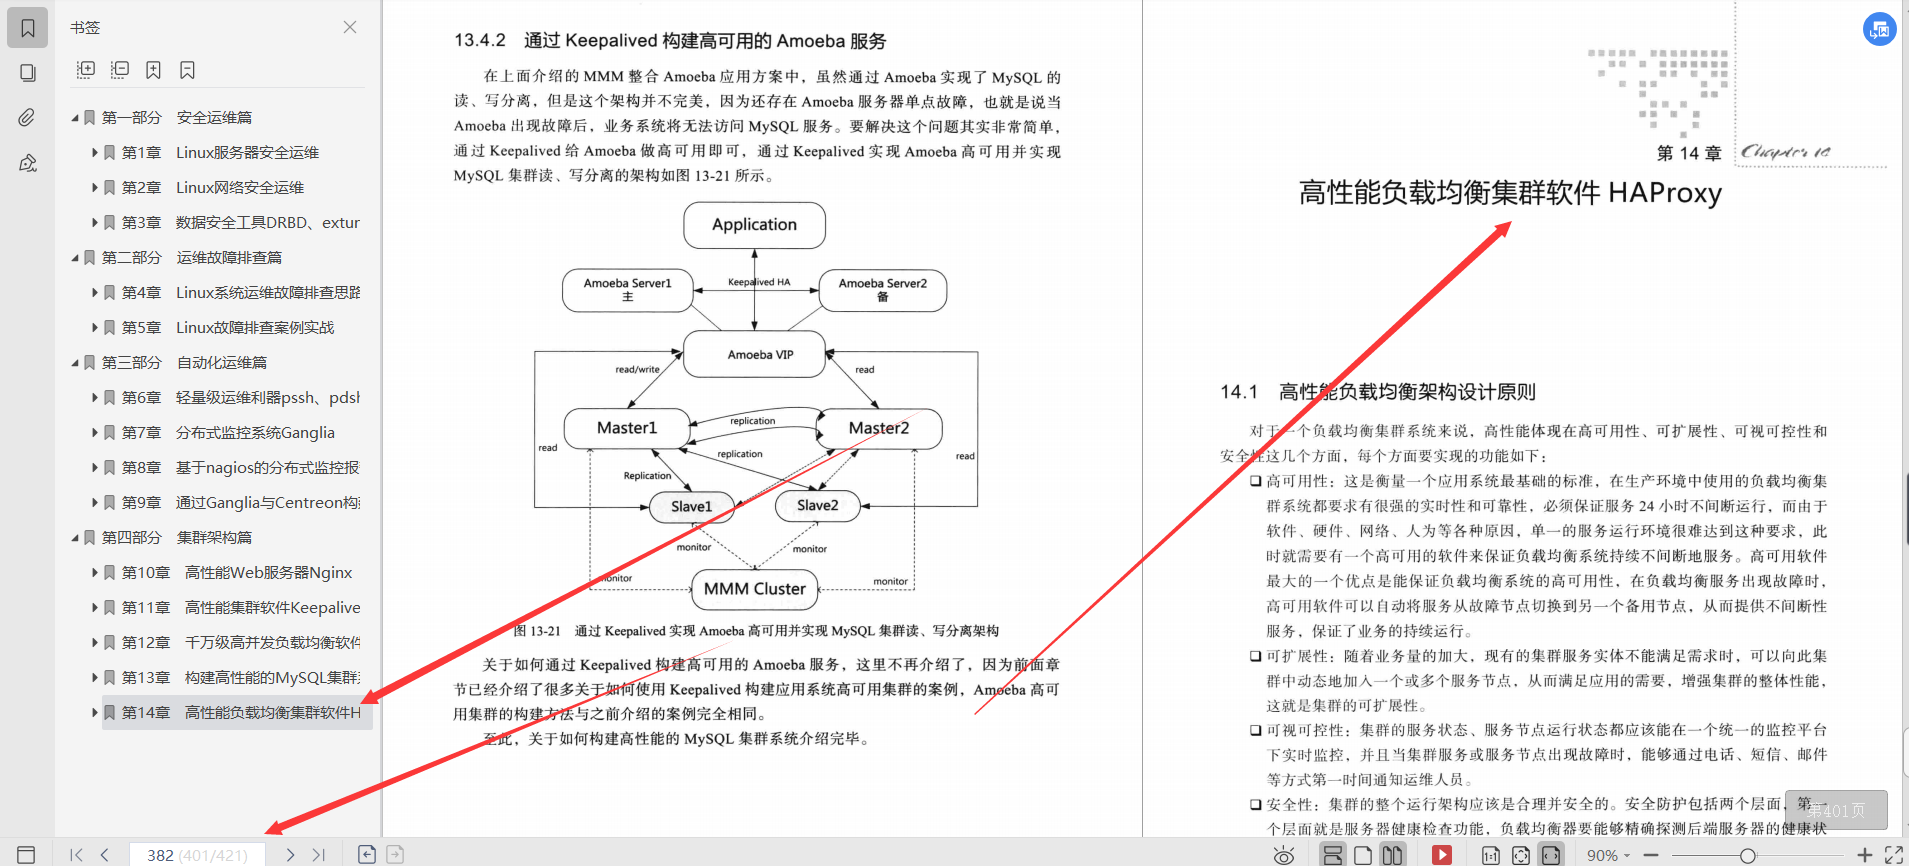 ¡Adoración!  PDF práctico de construcción de servidor Linux de alto rendimiento de 421 páginas que Huawei está aprendiendo internamente